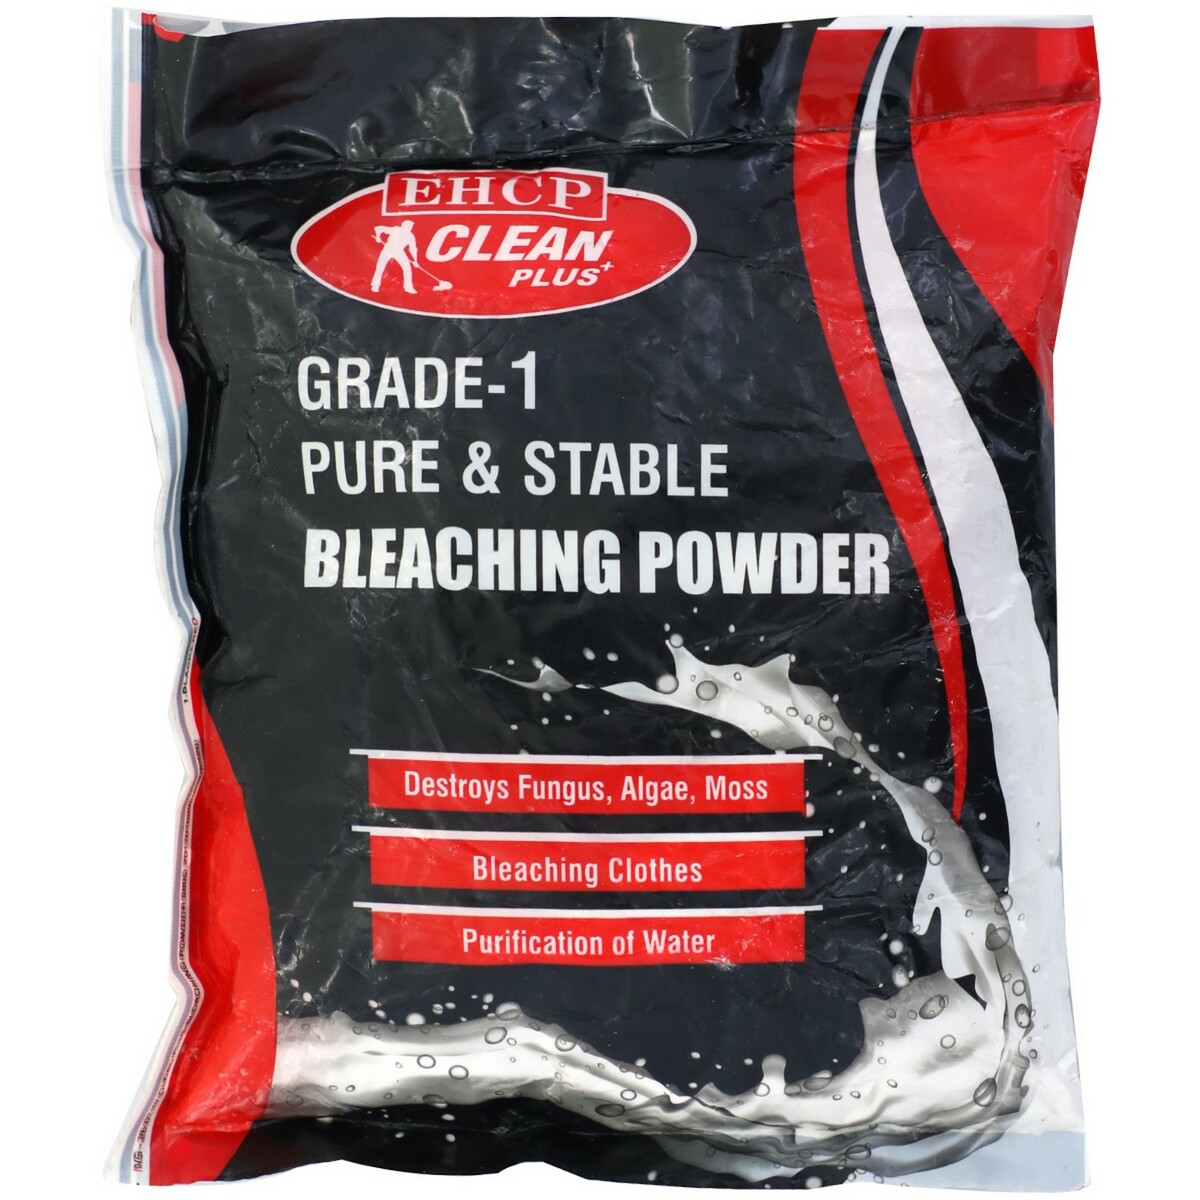 Clean Plus Bleaching Powder 500g